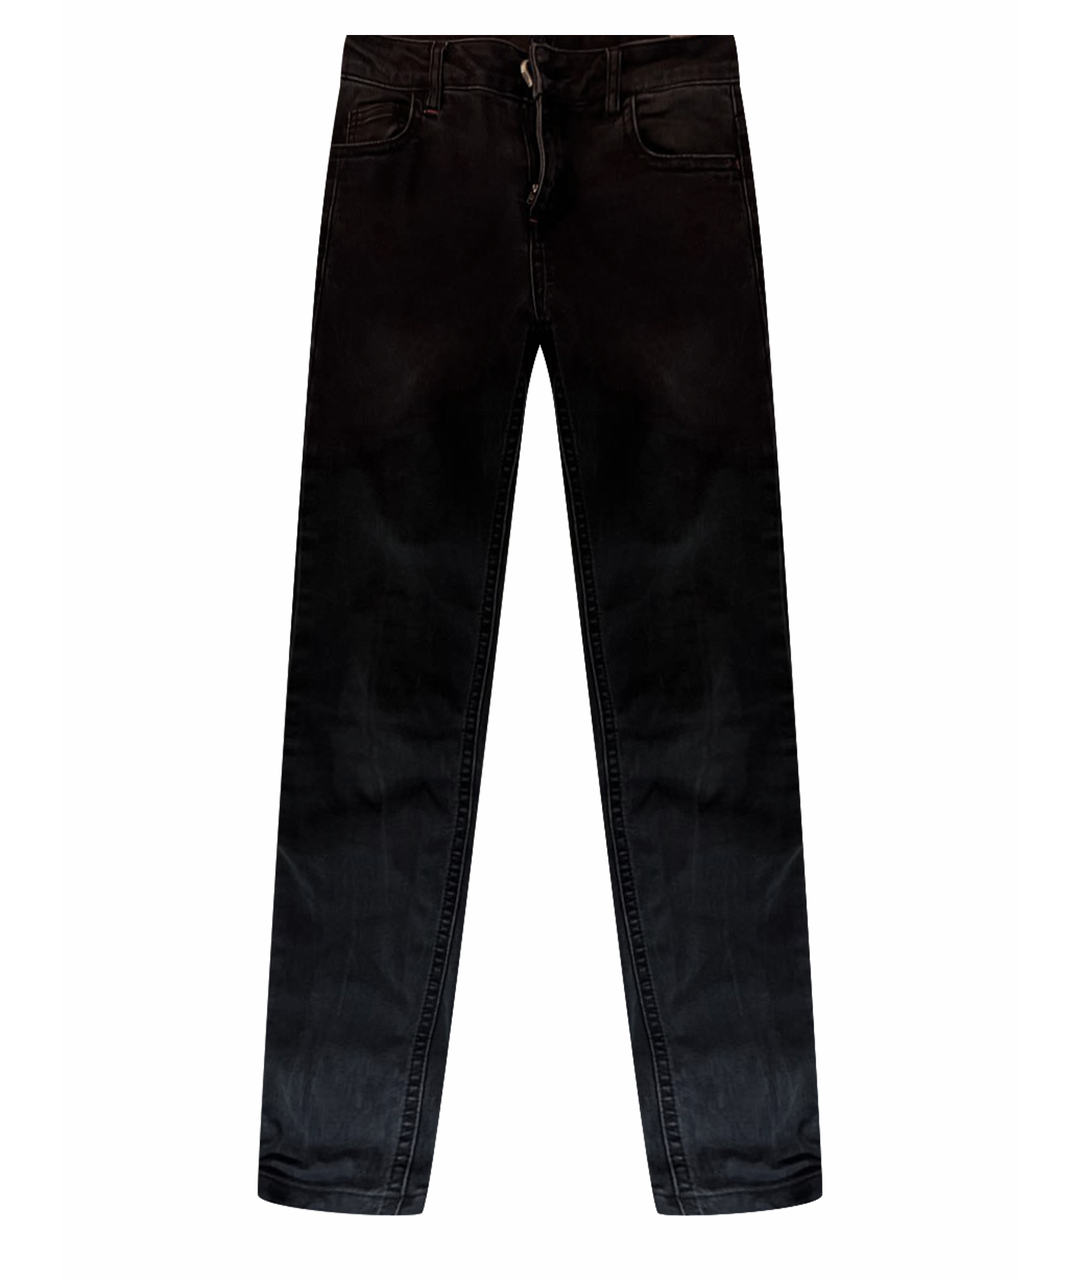 TWIN-SET Антрацитовые джинсы слим, фото 1